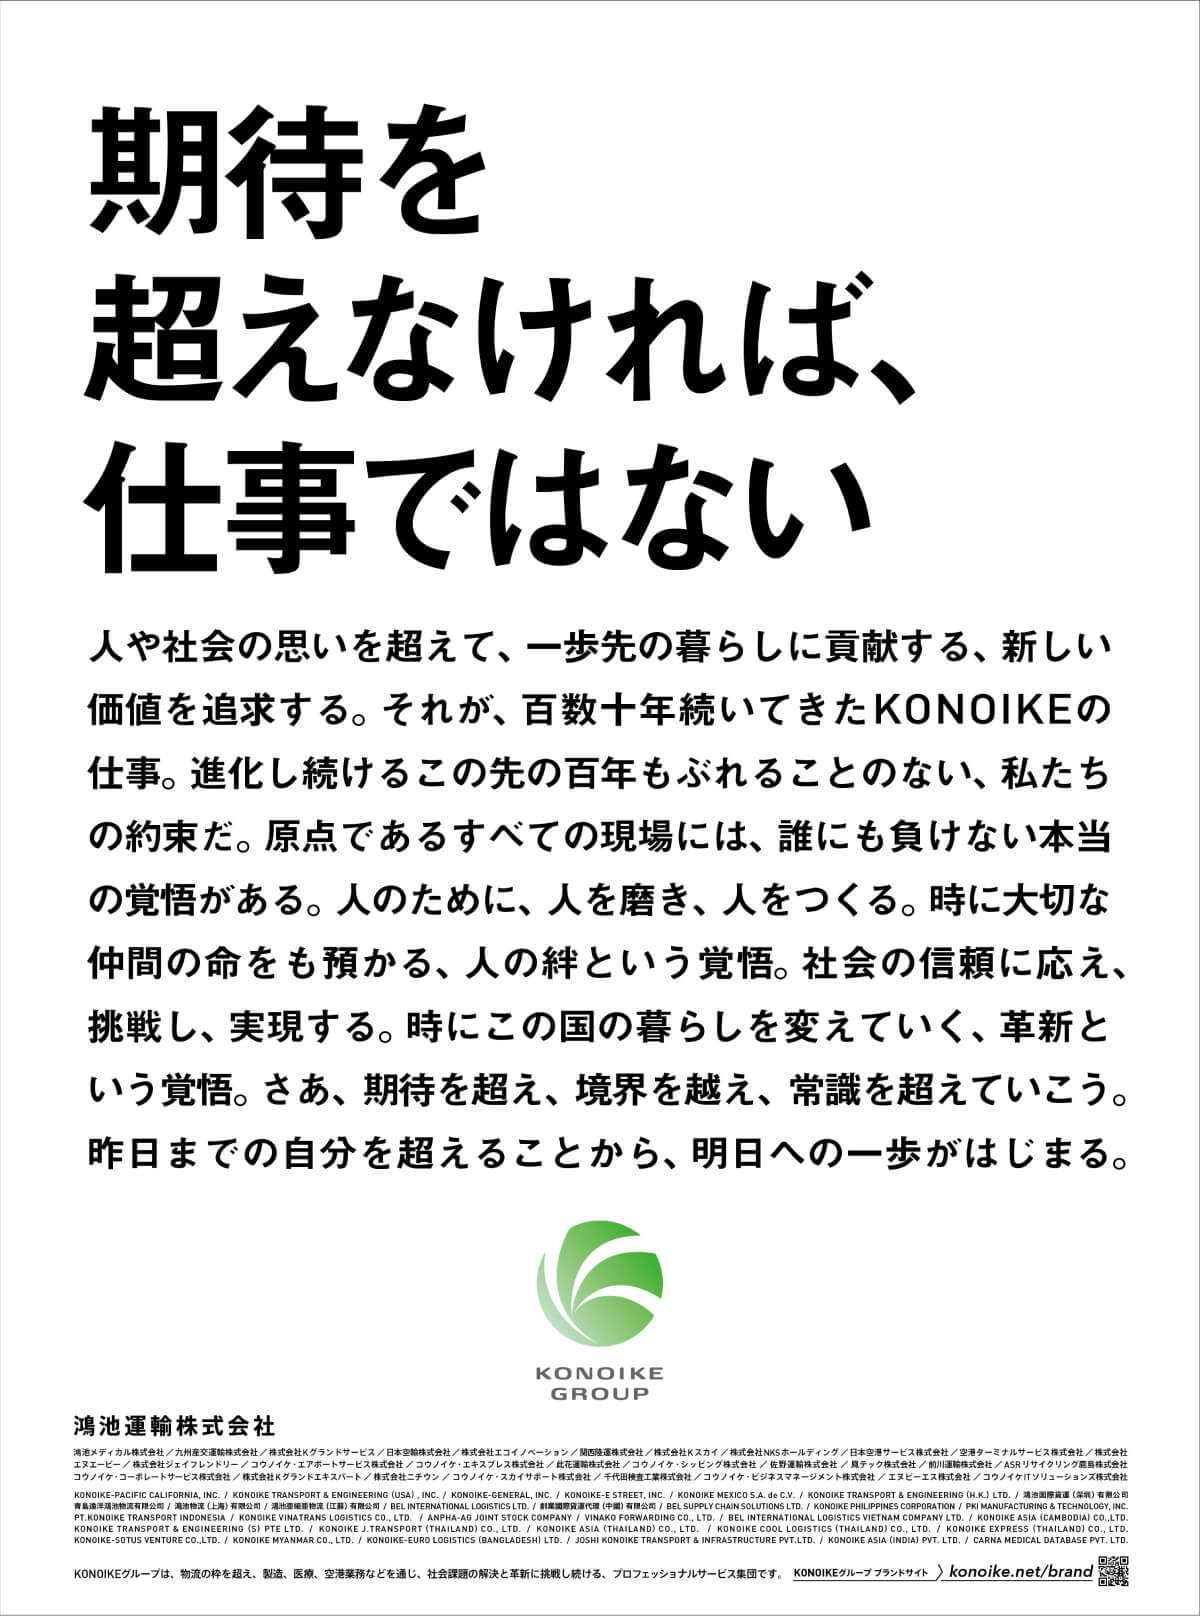 読売新聞(全国版)全面広告画像